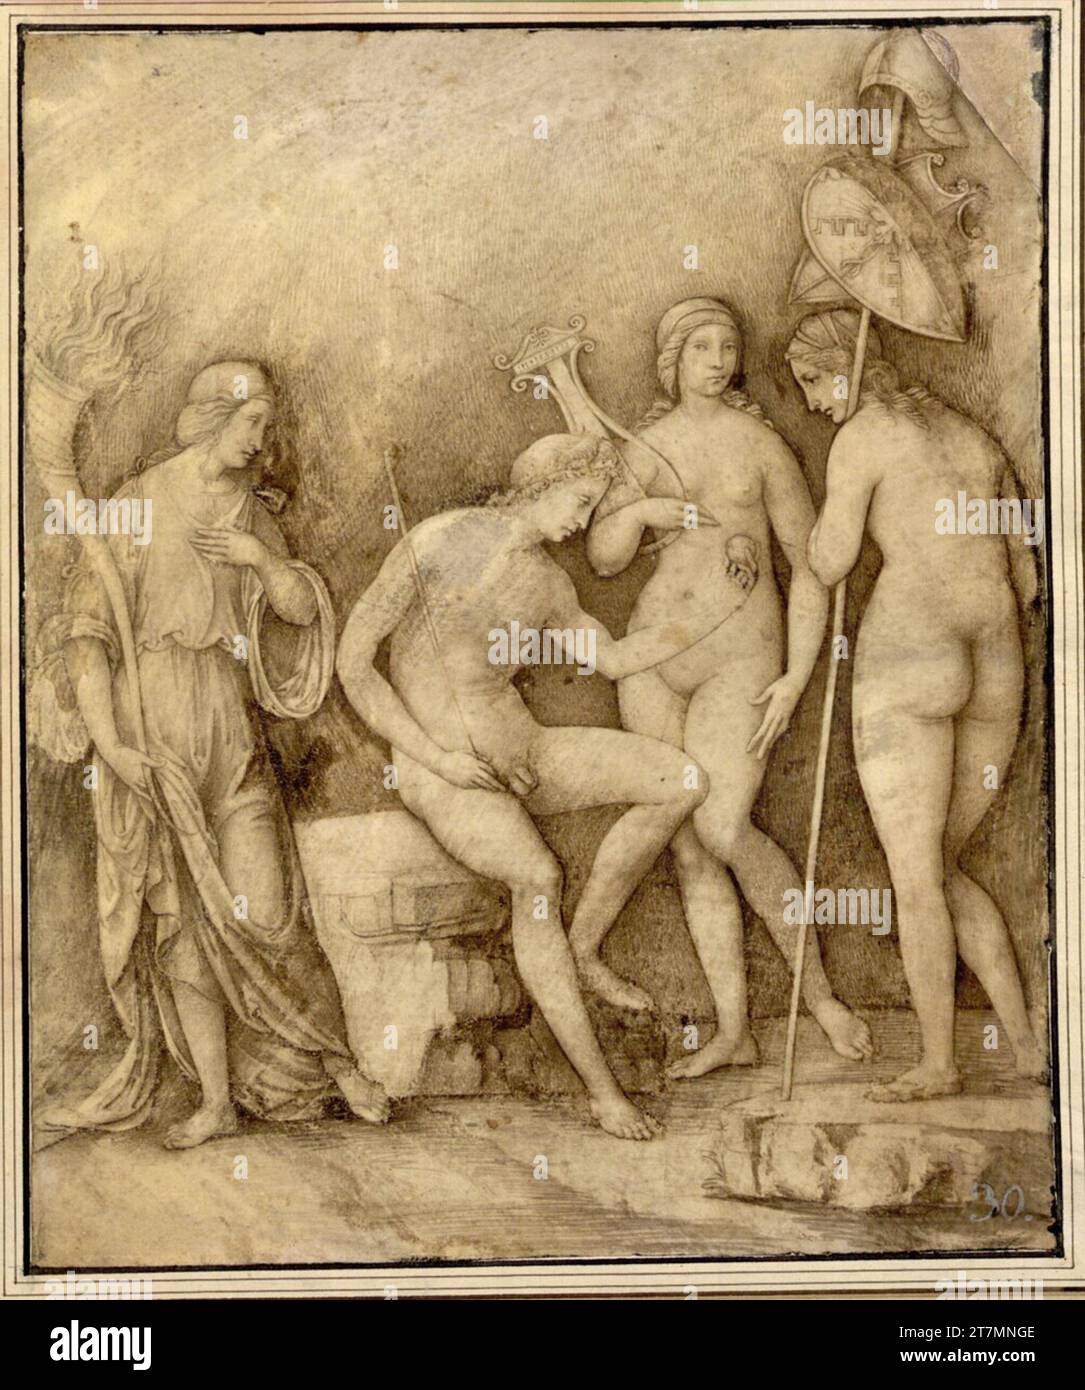 Francesco di Marco di Giacomo Raibolini das Urteil von Paris. Pinselzeichnung mit anschließendem Frühling auf Pergament um 1505-1506 Stockfoto